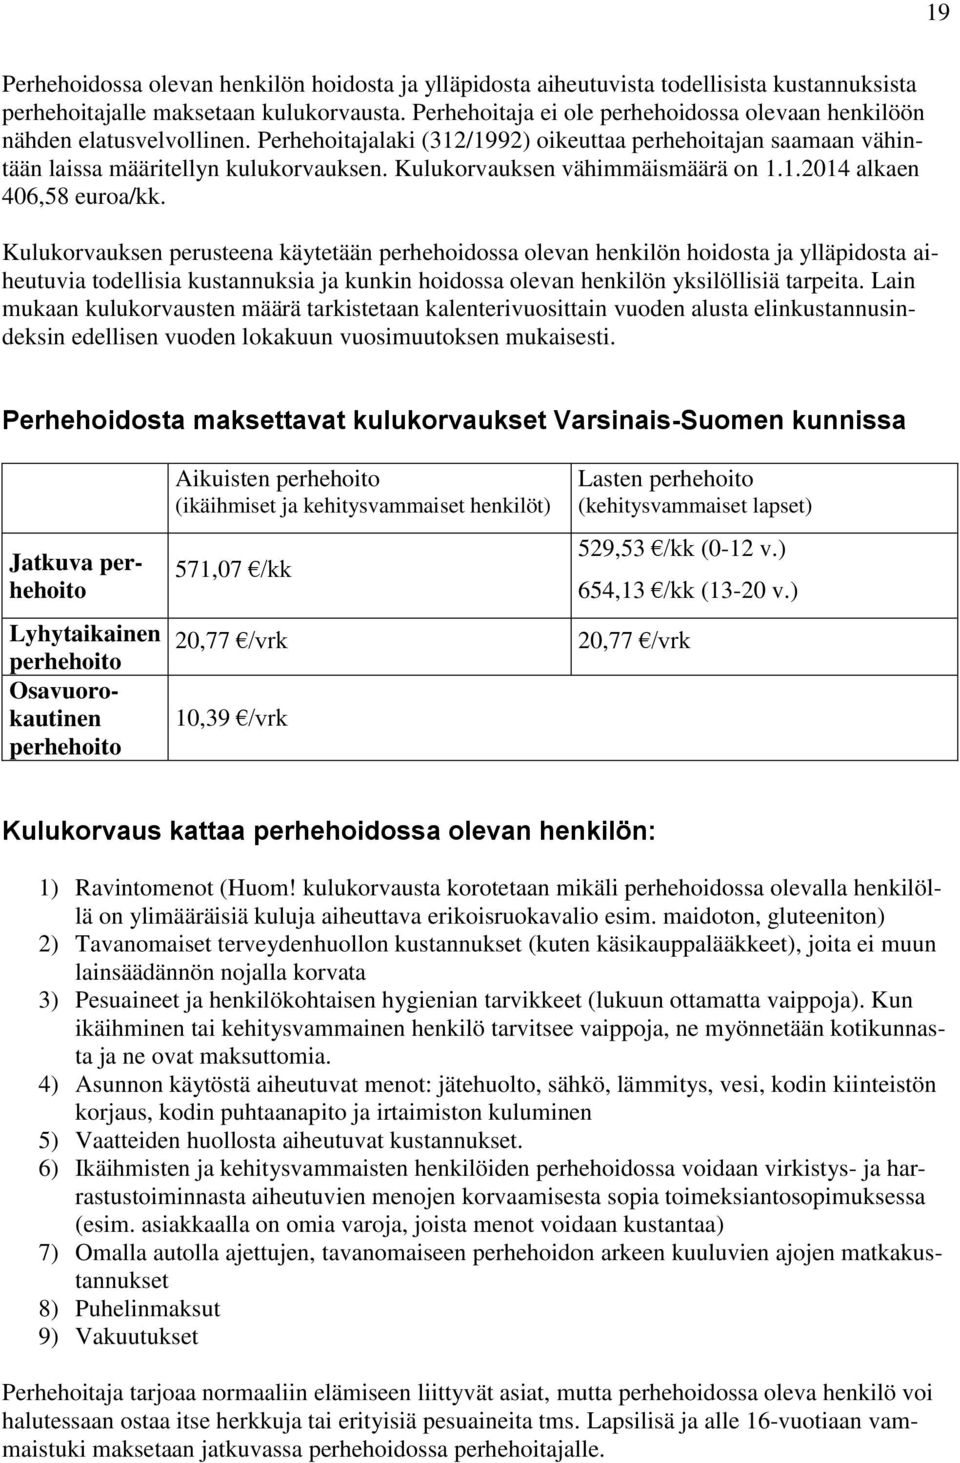 Kulukorvauksen vähimmäismäärä on 1.1.2014 alkaen 406,58 euroa/kk.